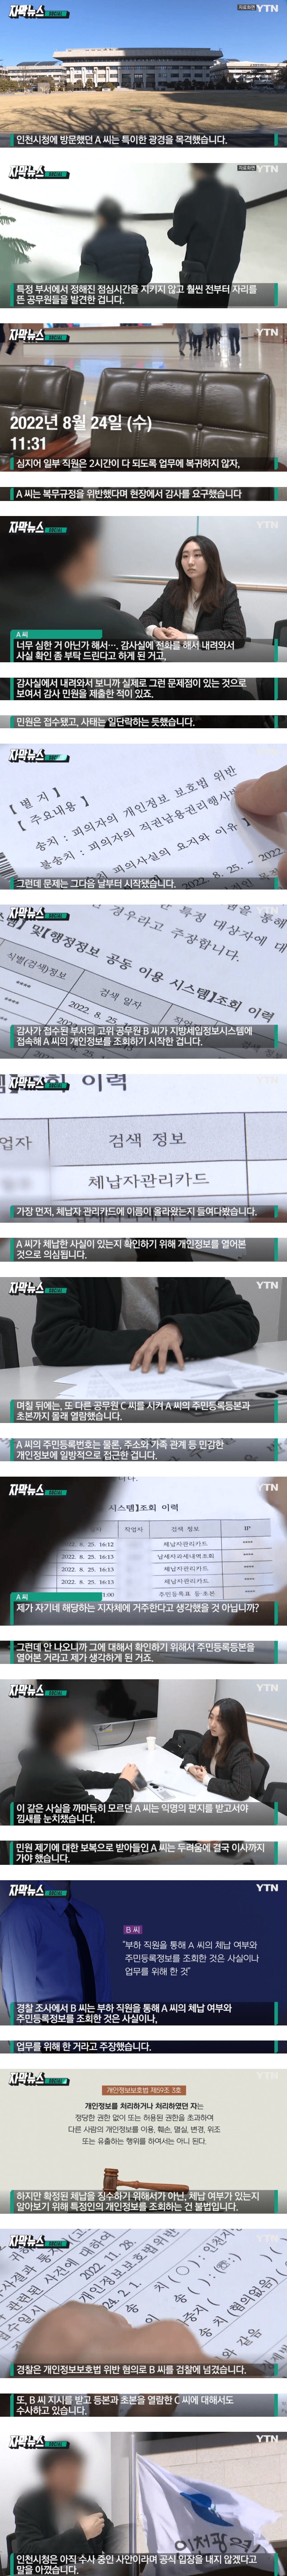 감사 요구한 민원인 개인정보 몰래 열람 - 1